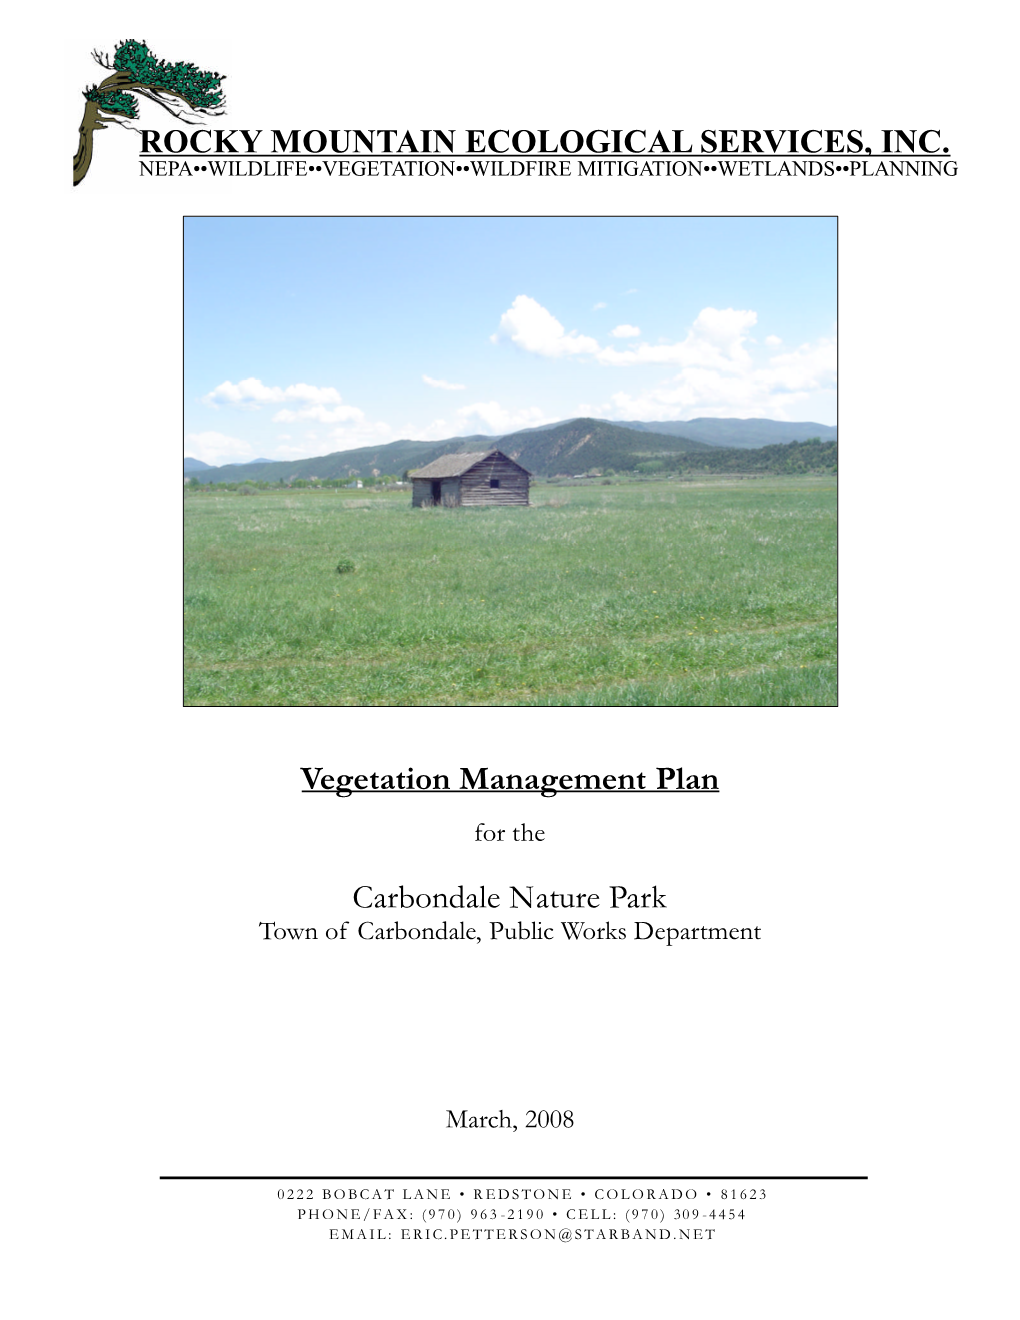 Vegetation Management Plan Carbondale Nature Park ROCKY